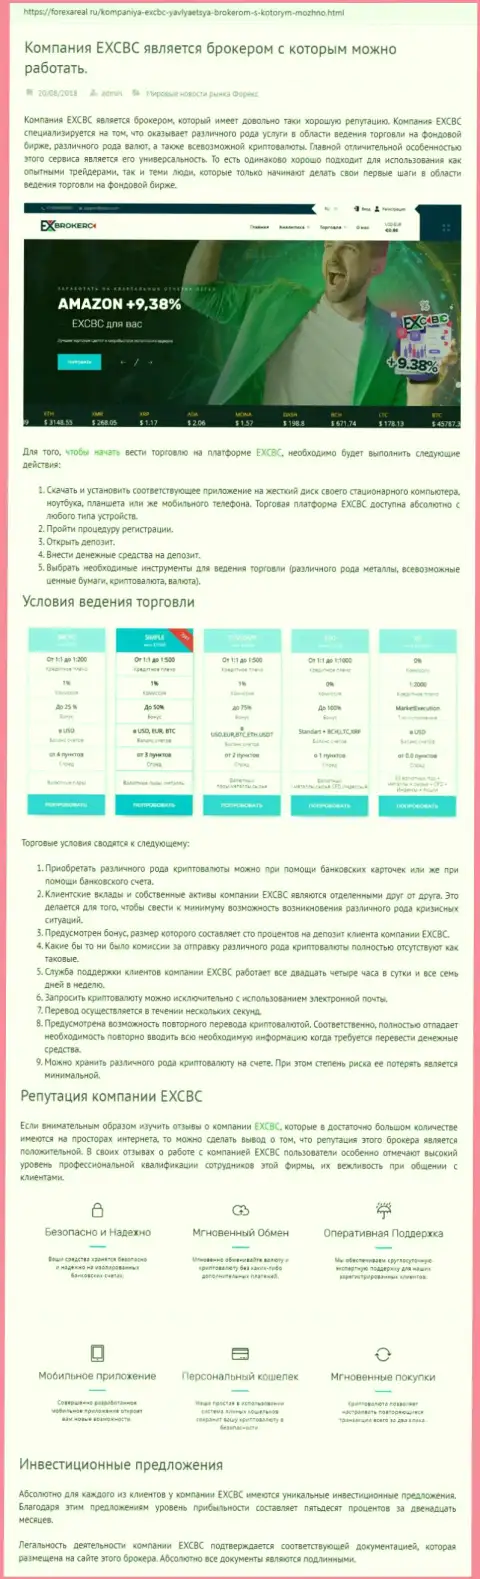 Веб-ресурс форексареал ру выложил обзор форекс дилинговой организации EX Brokerc